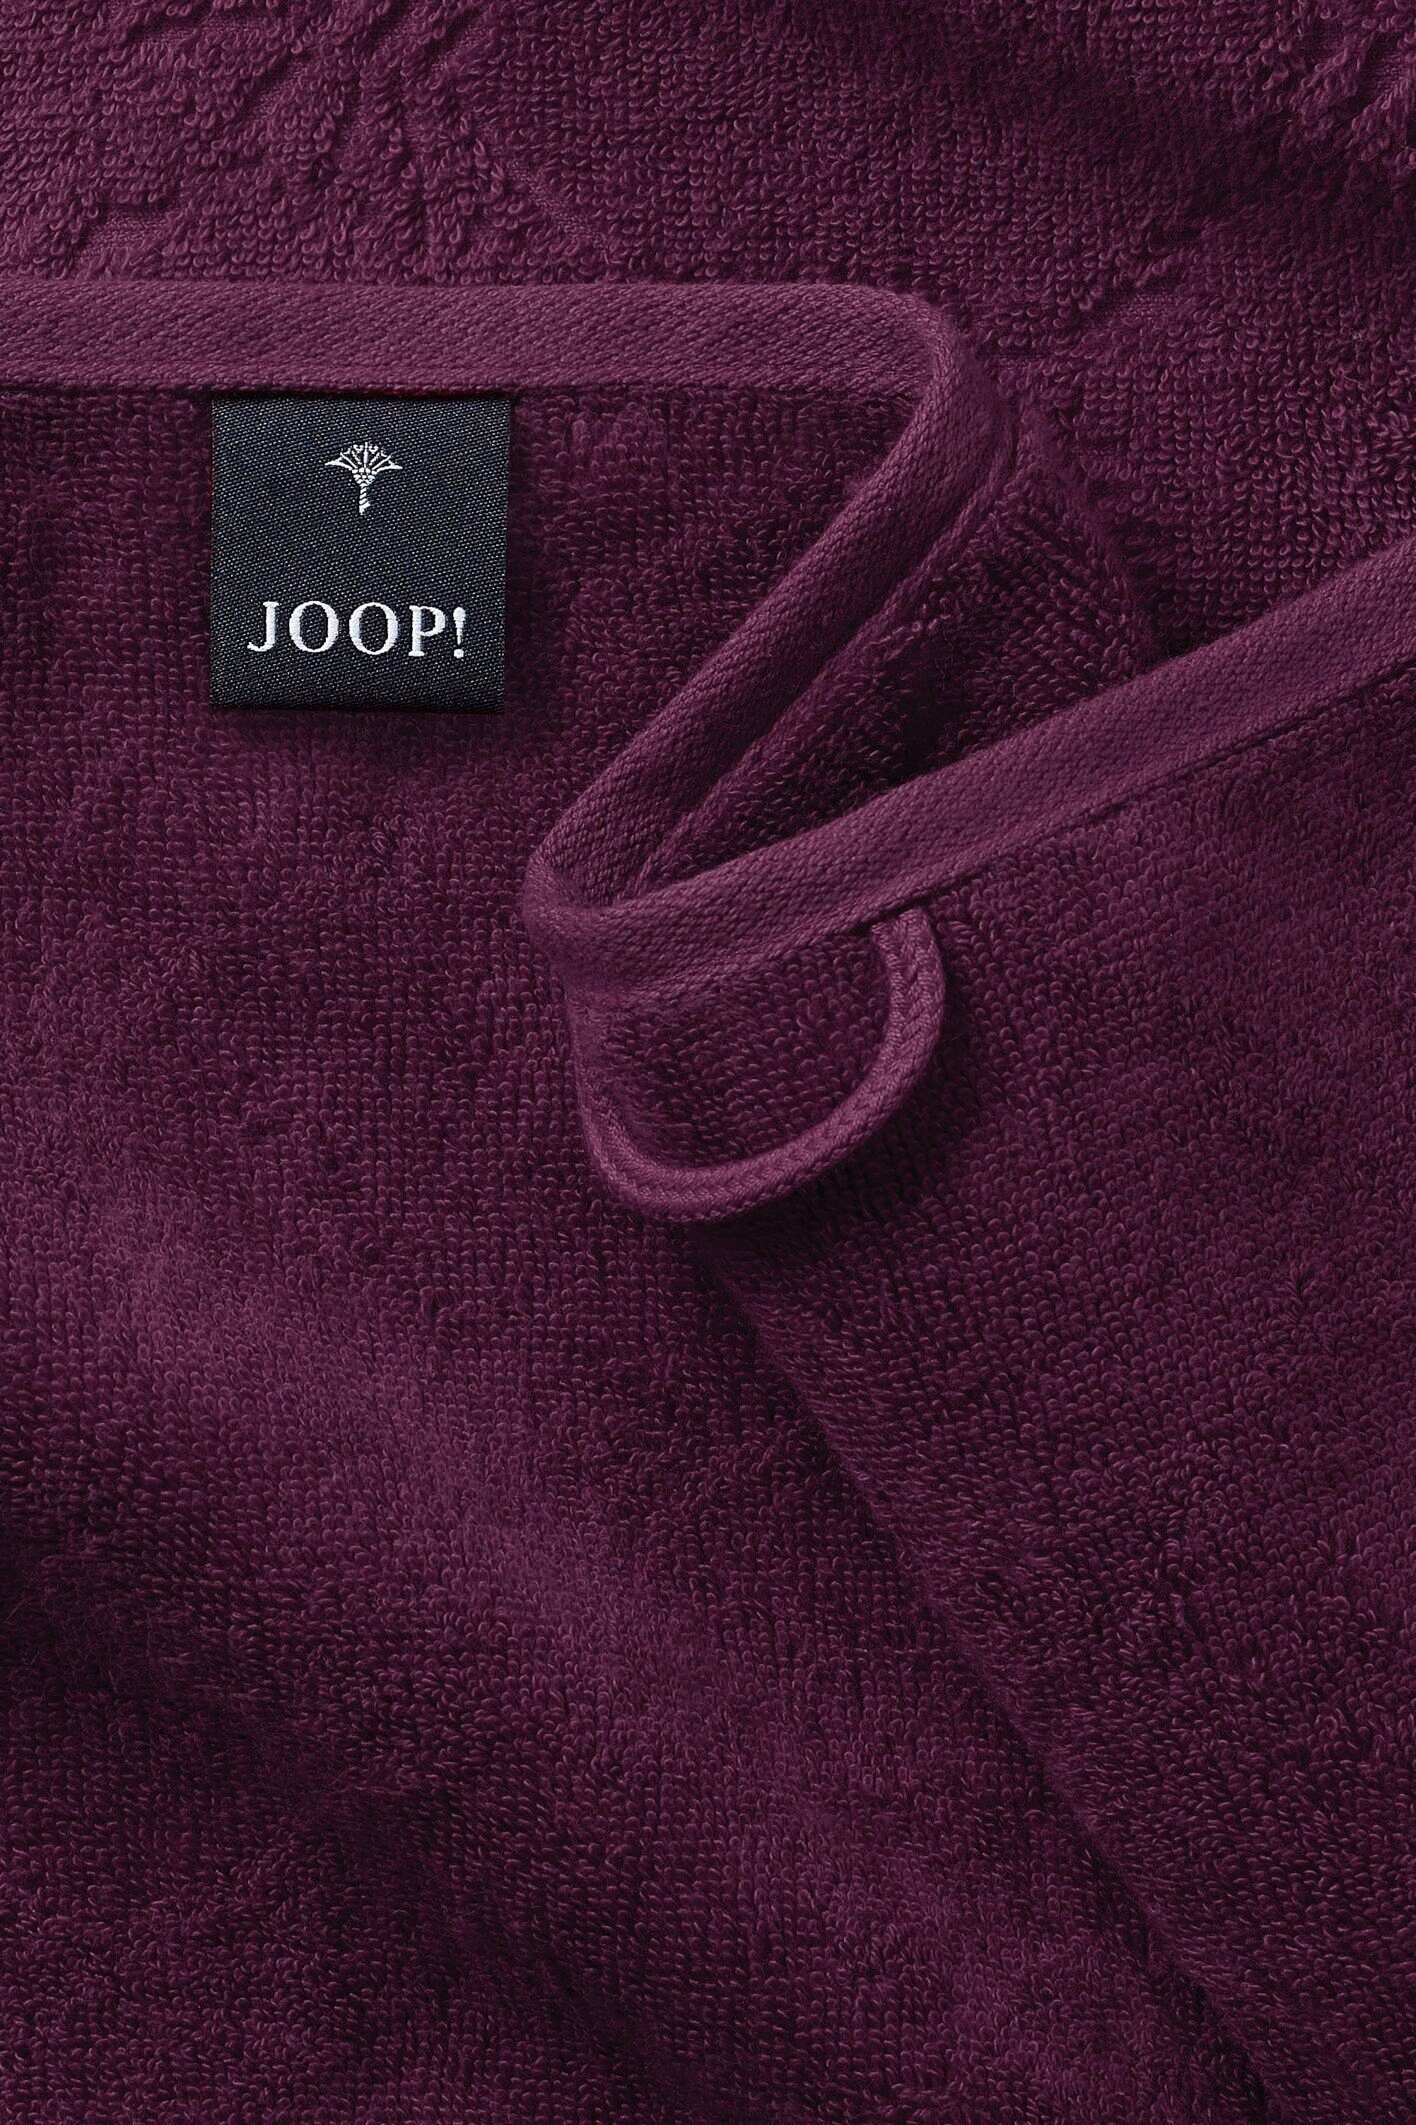 Textil Handtücher CORNFLOWER UNI - Beere LIVING (2-St) Handtuch-Set, JOOP! Joop!